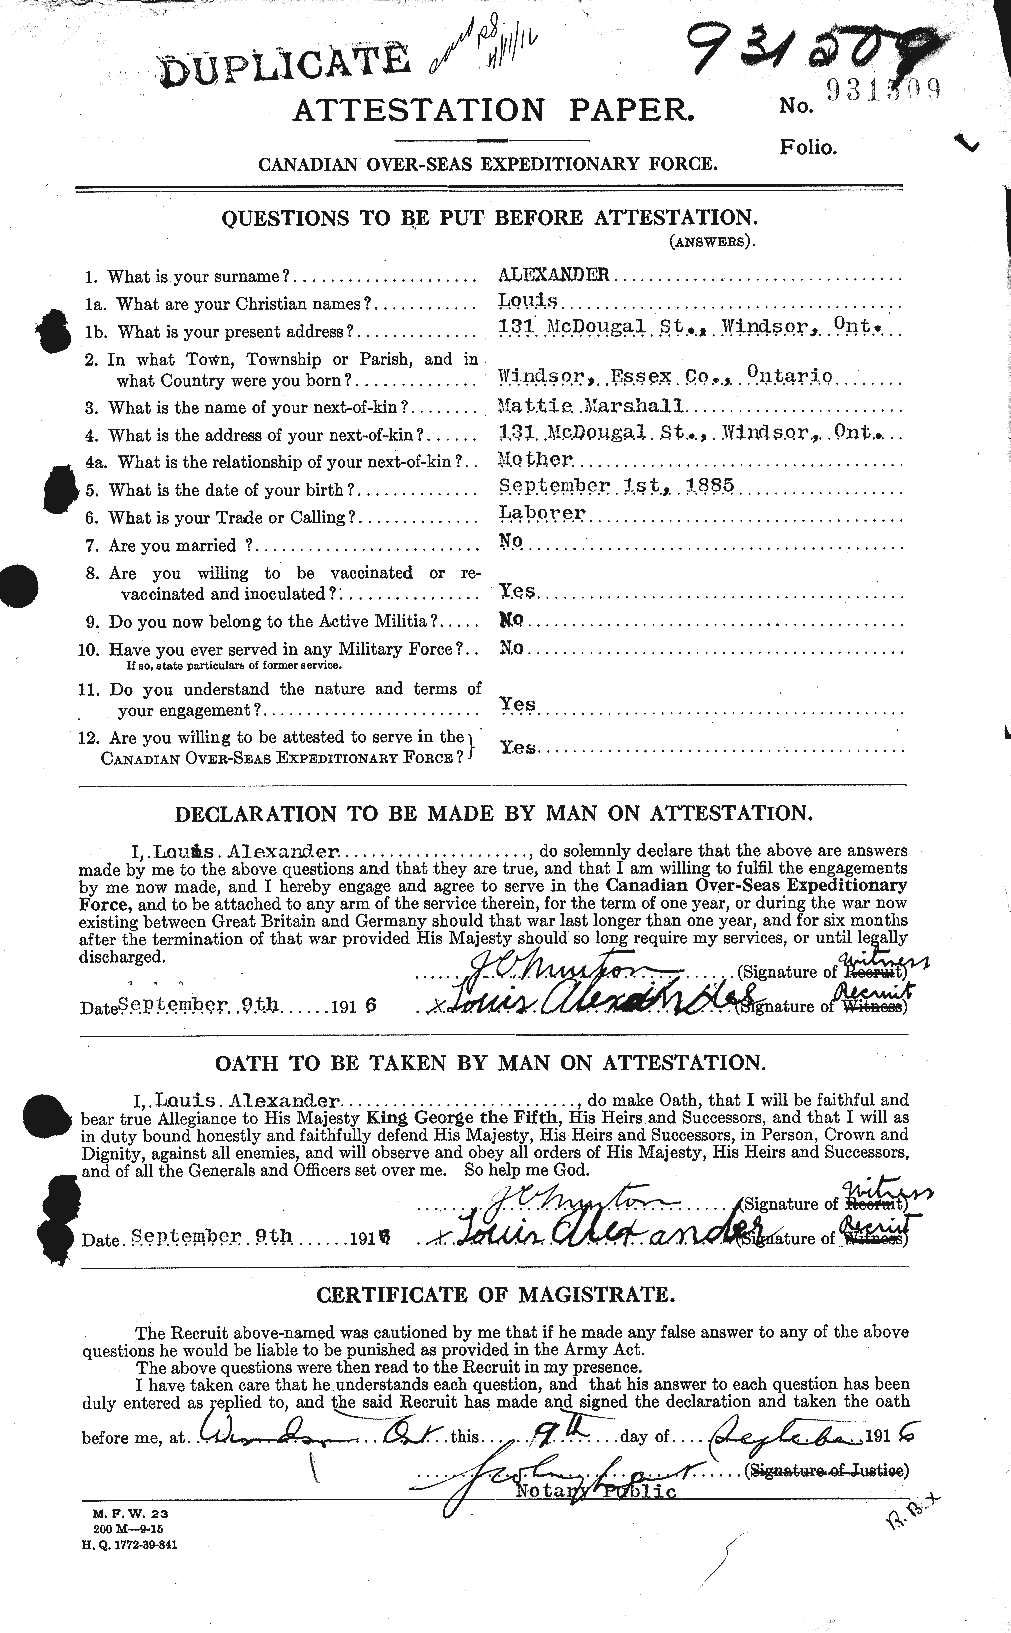 Dossiers du Personnel de la Première Guerre mondiale - CEC 204297a